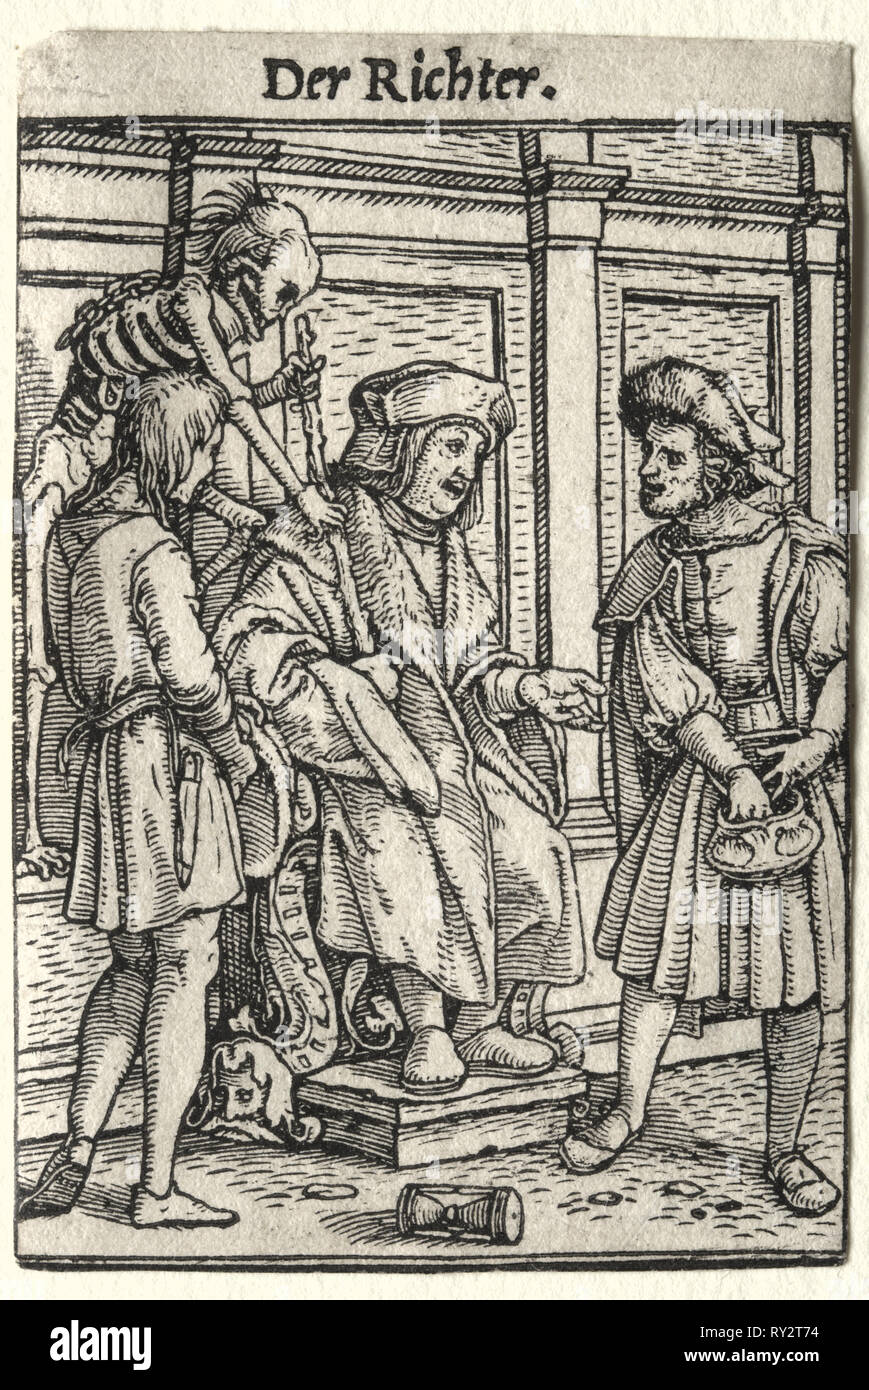 La danse de mort : le juge. Hans Holbein (allemand, 1497/98-1543). Gravure sur bois Banque D'Images